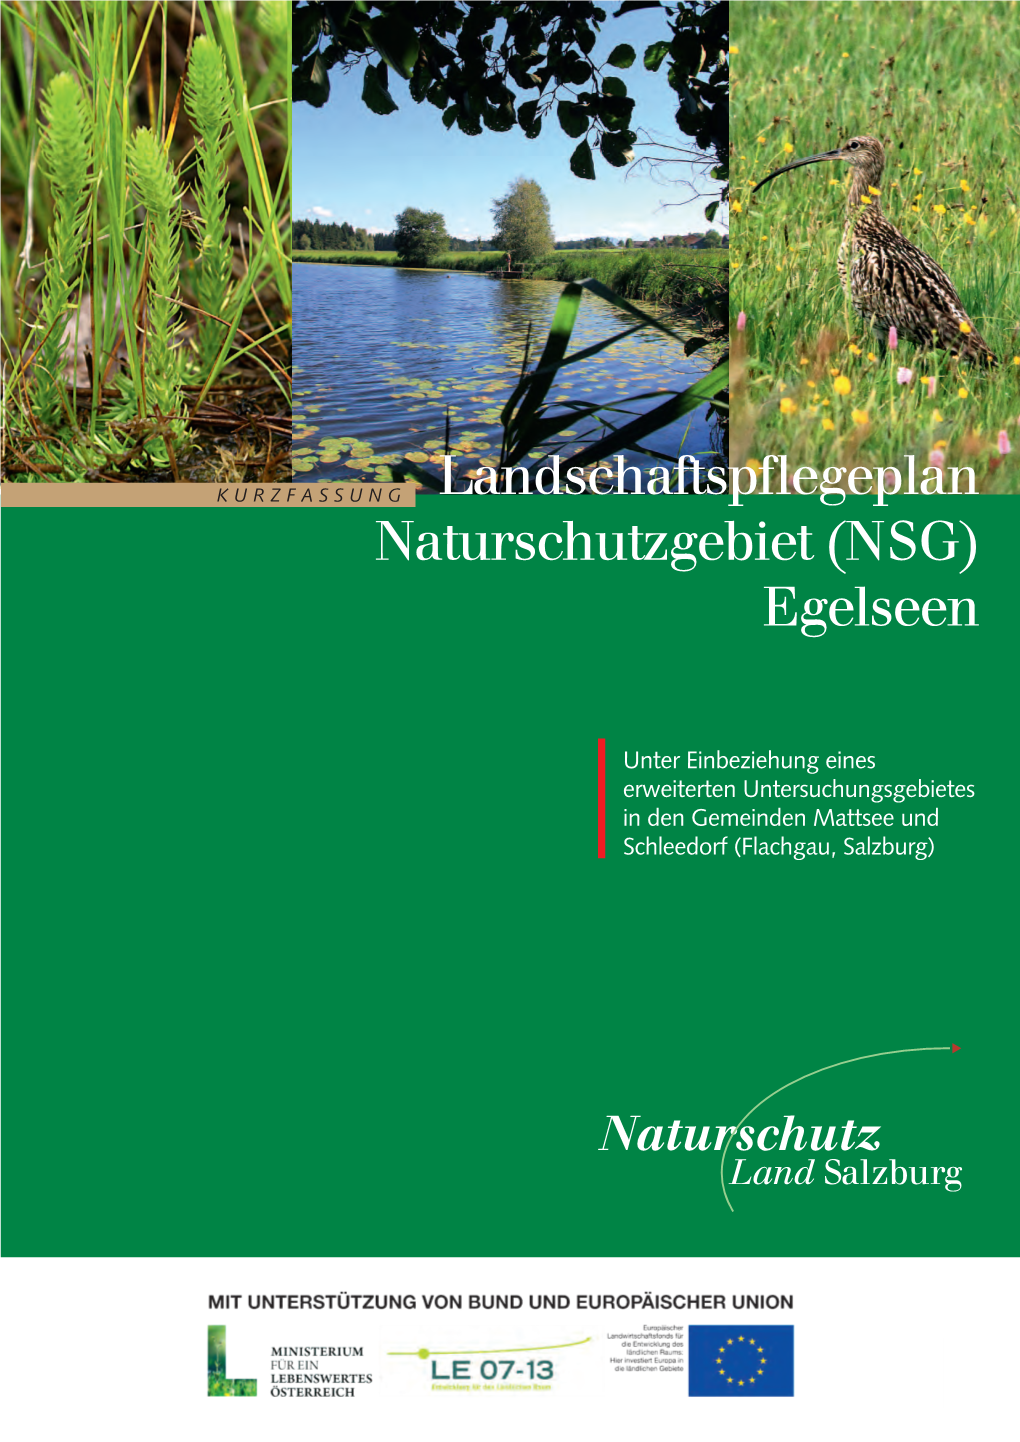 Landschaftspflegeplan Naturschutzgebiet (NSG) Egelseen